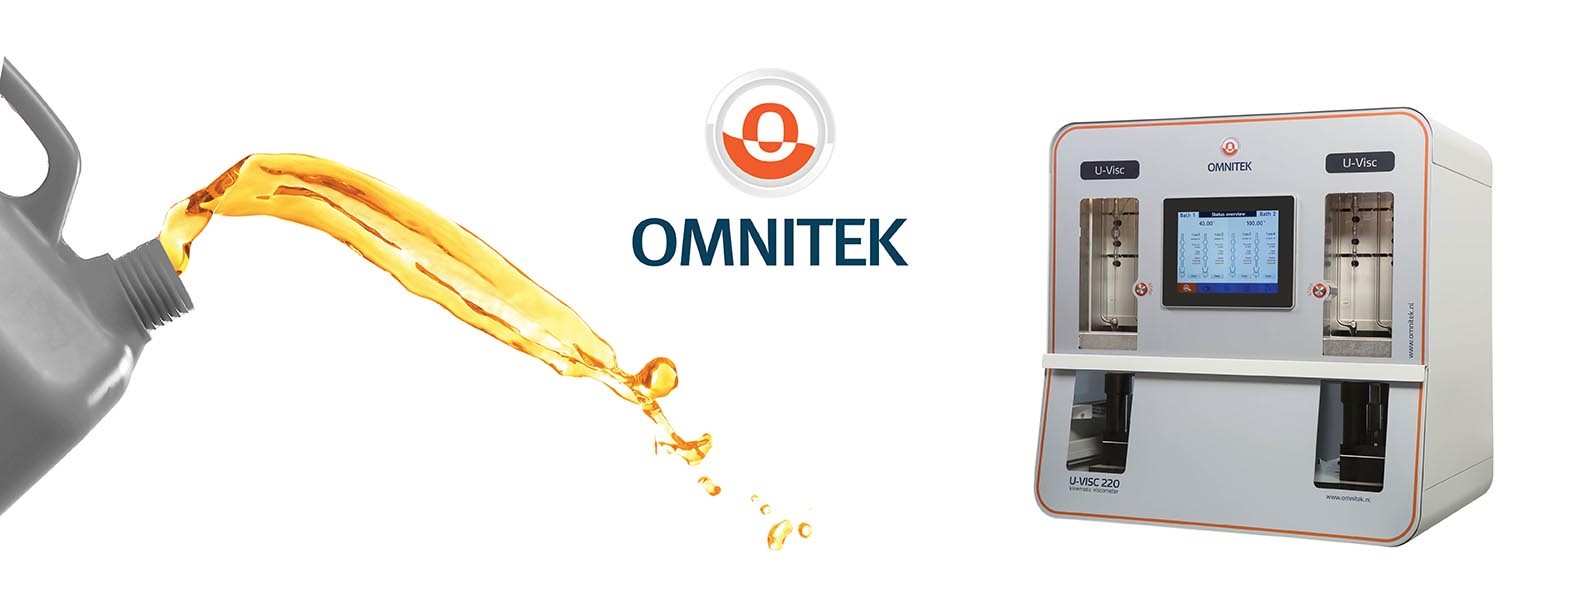 Omnitek-Homepage-Banner-1